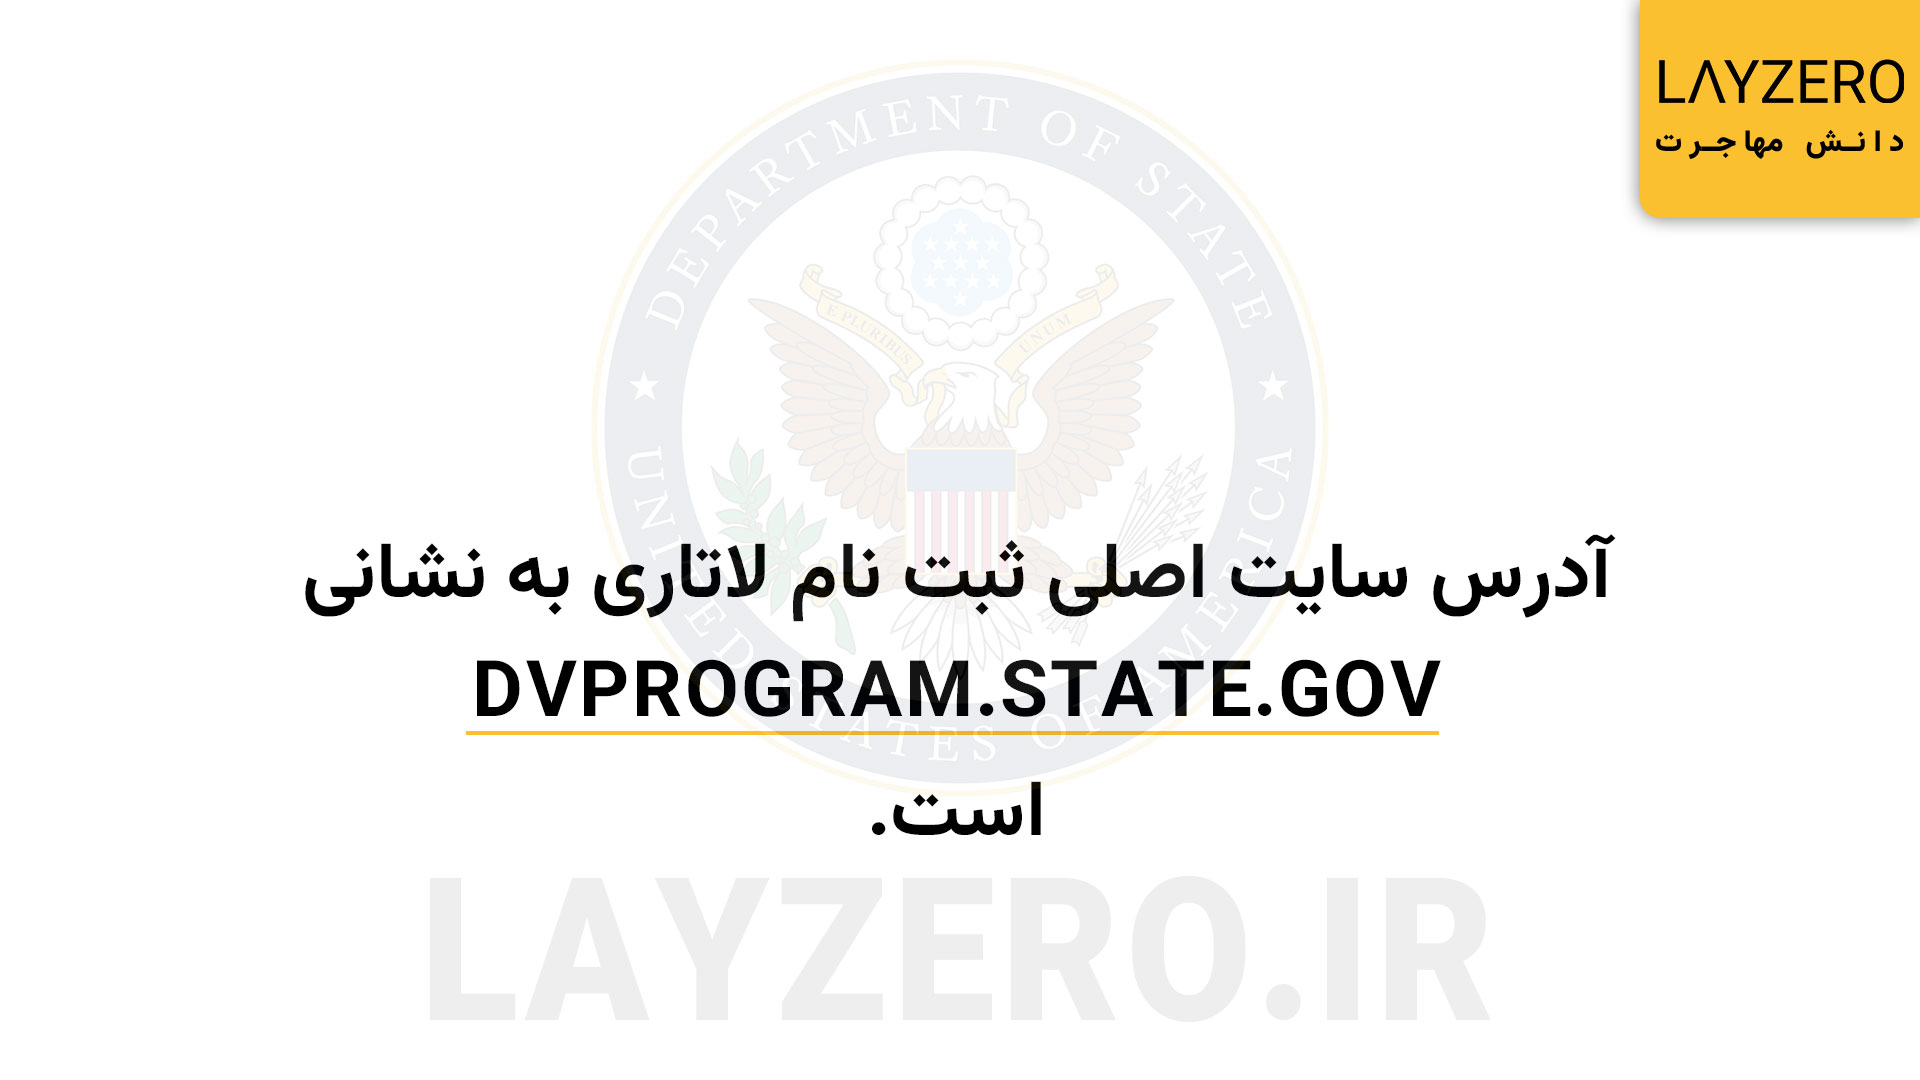 آدرس سایت لاتاری dvprogram.state.gov می‌باشد. شما در زمان شروع ثبت نام لاتاری می‌توانید به این آدرس مراجعه نموده و ثبت نام خود را انجام دهید.